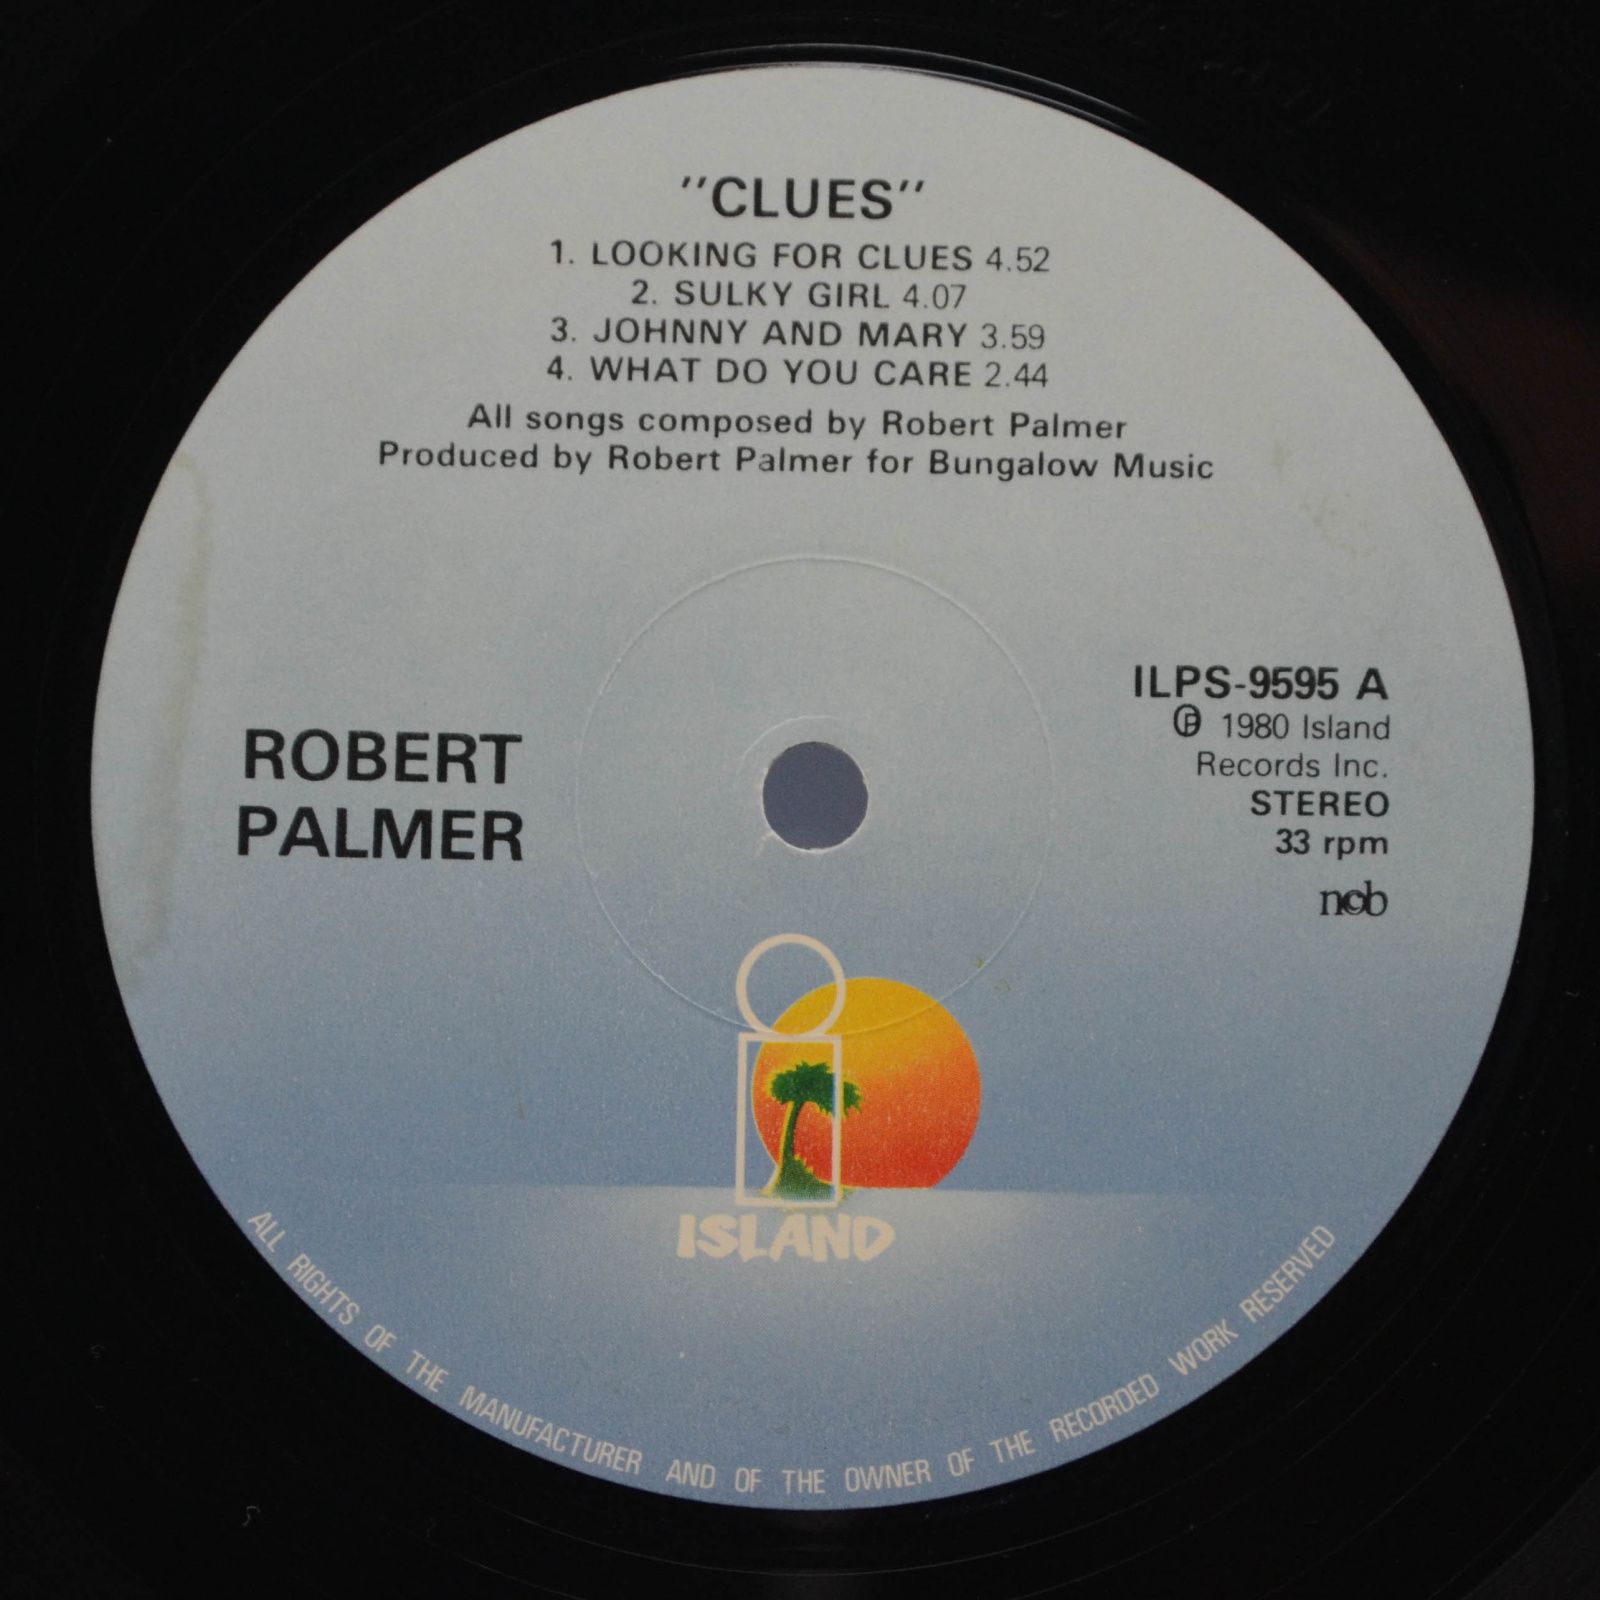 Robert Palmer — Clues, 1980